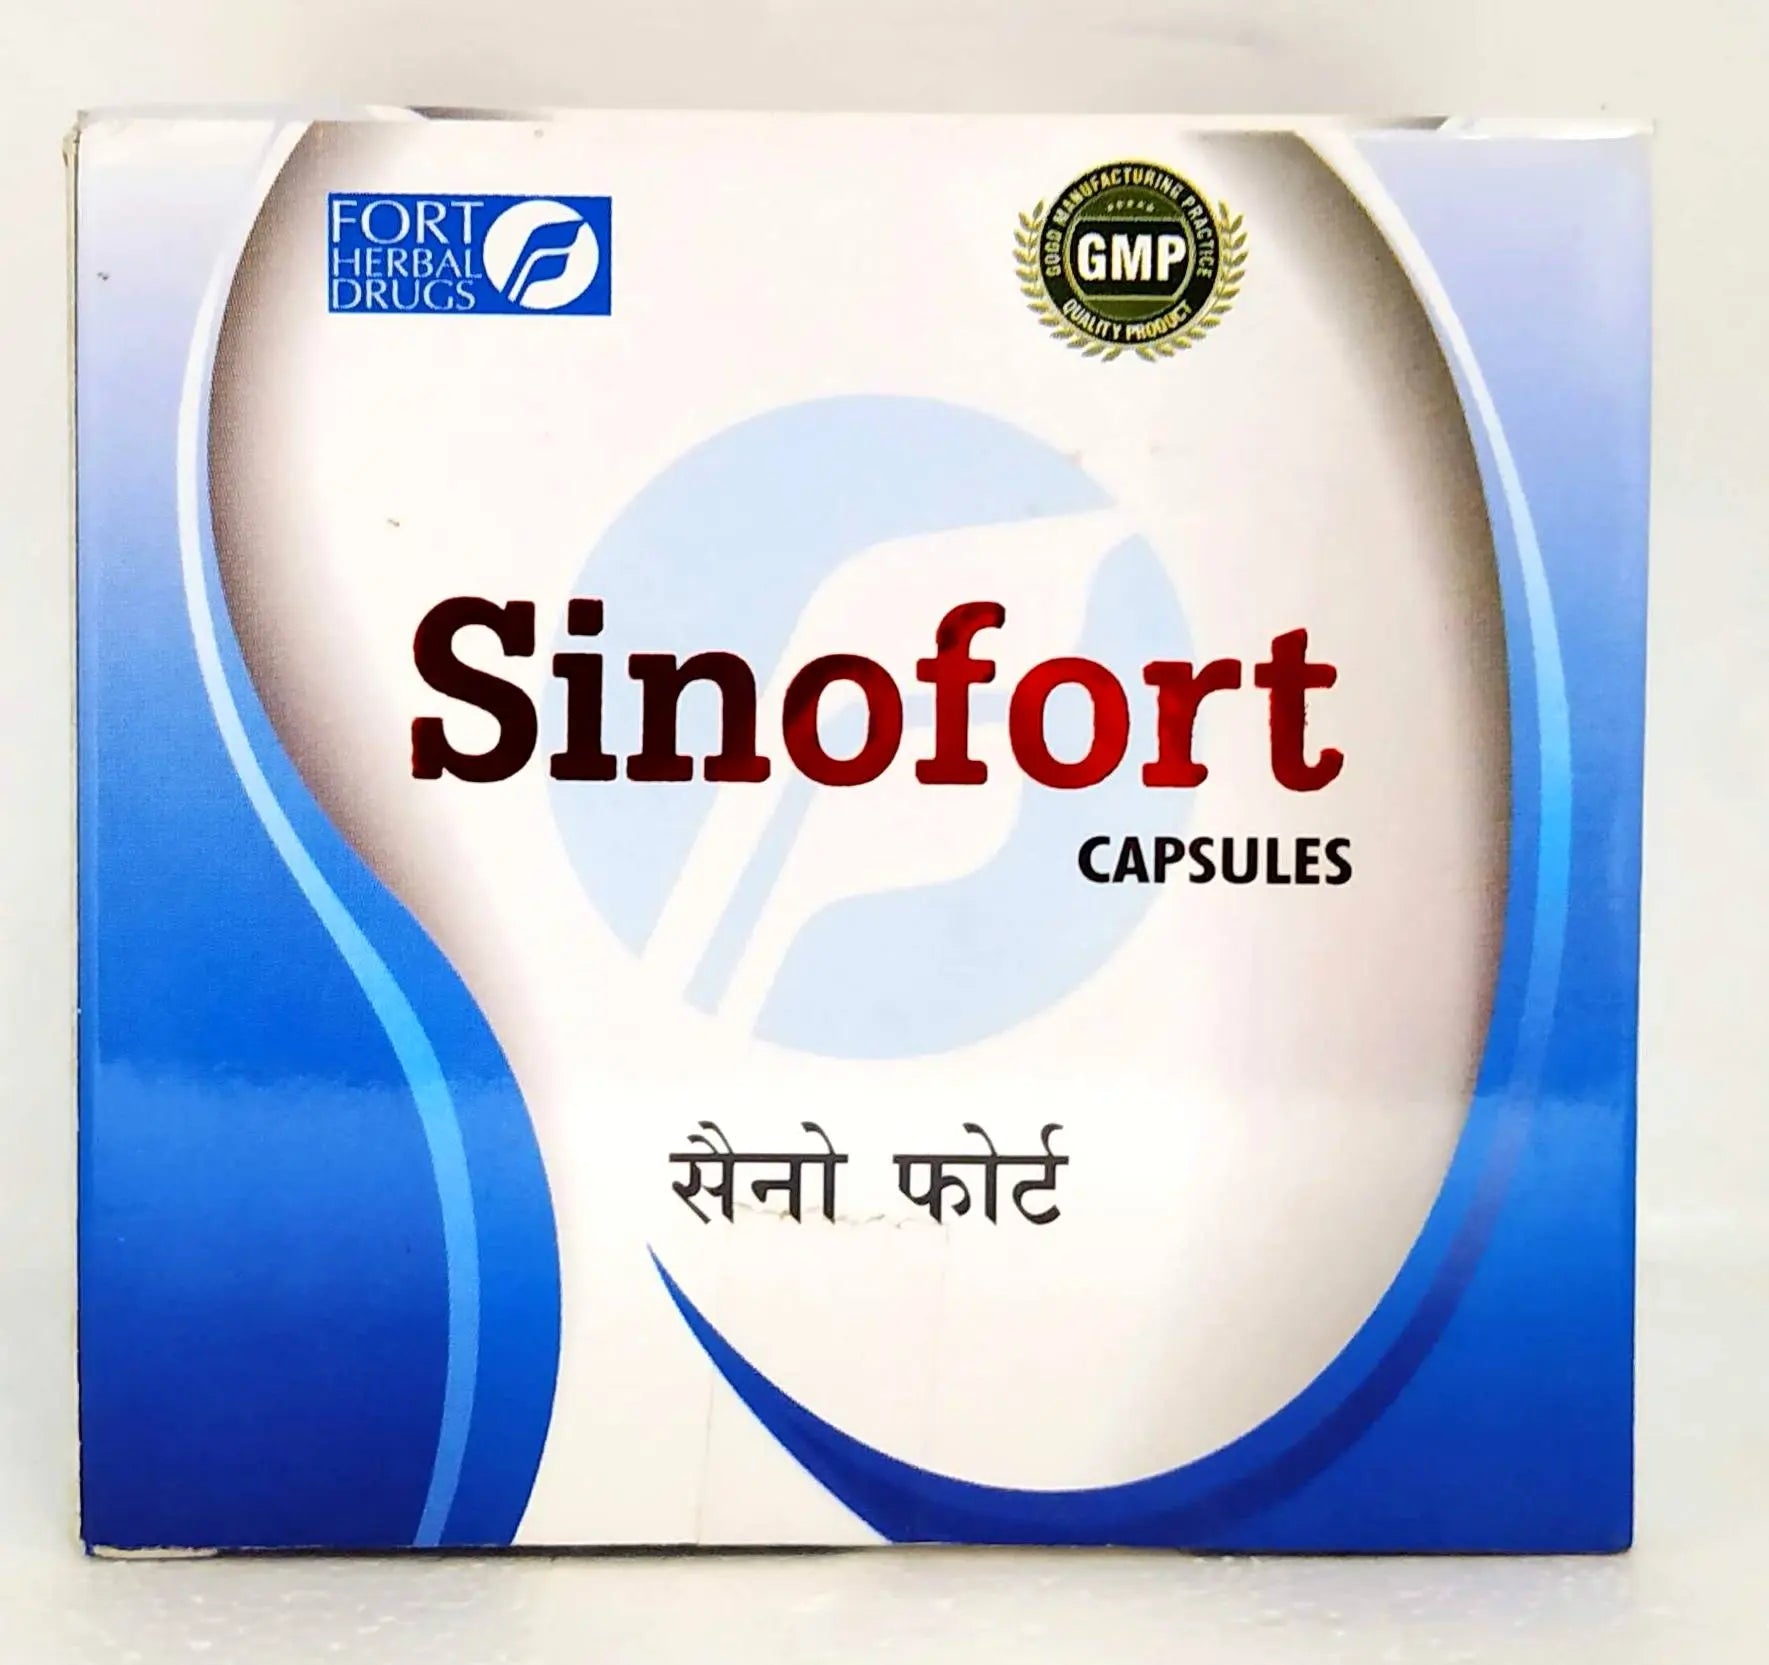 Sinofort Capsules - 10Capsules Fort Herbal Drugs